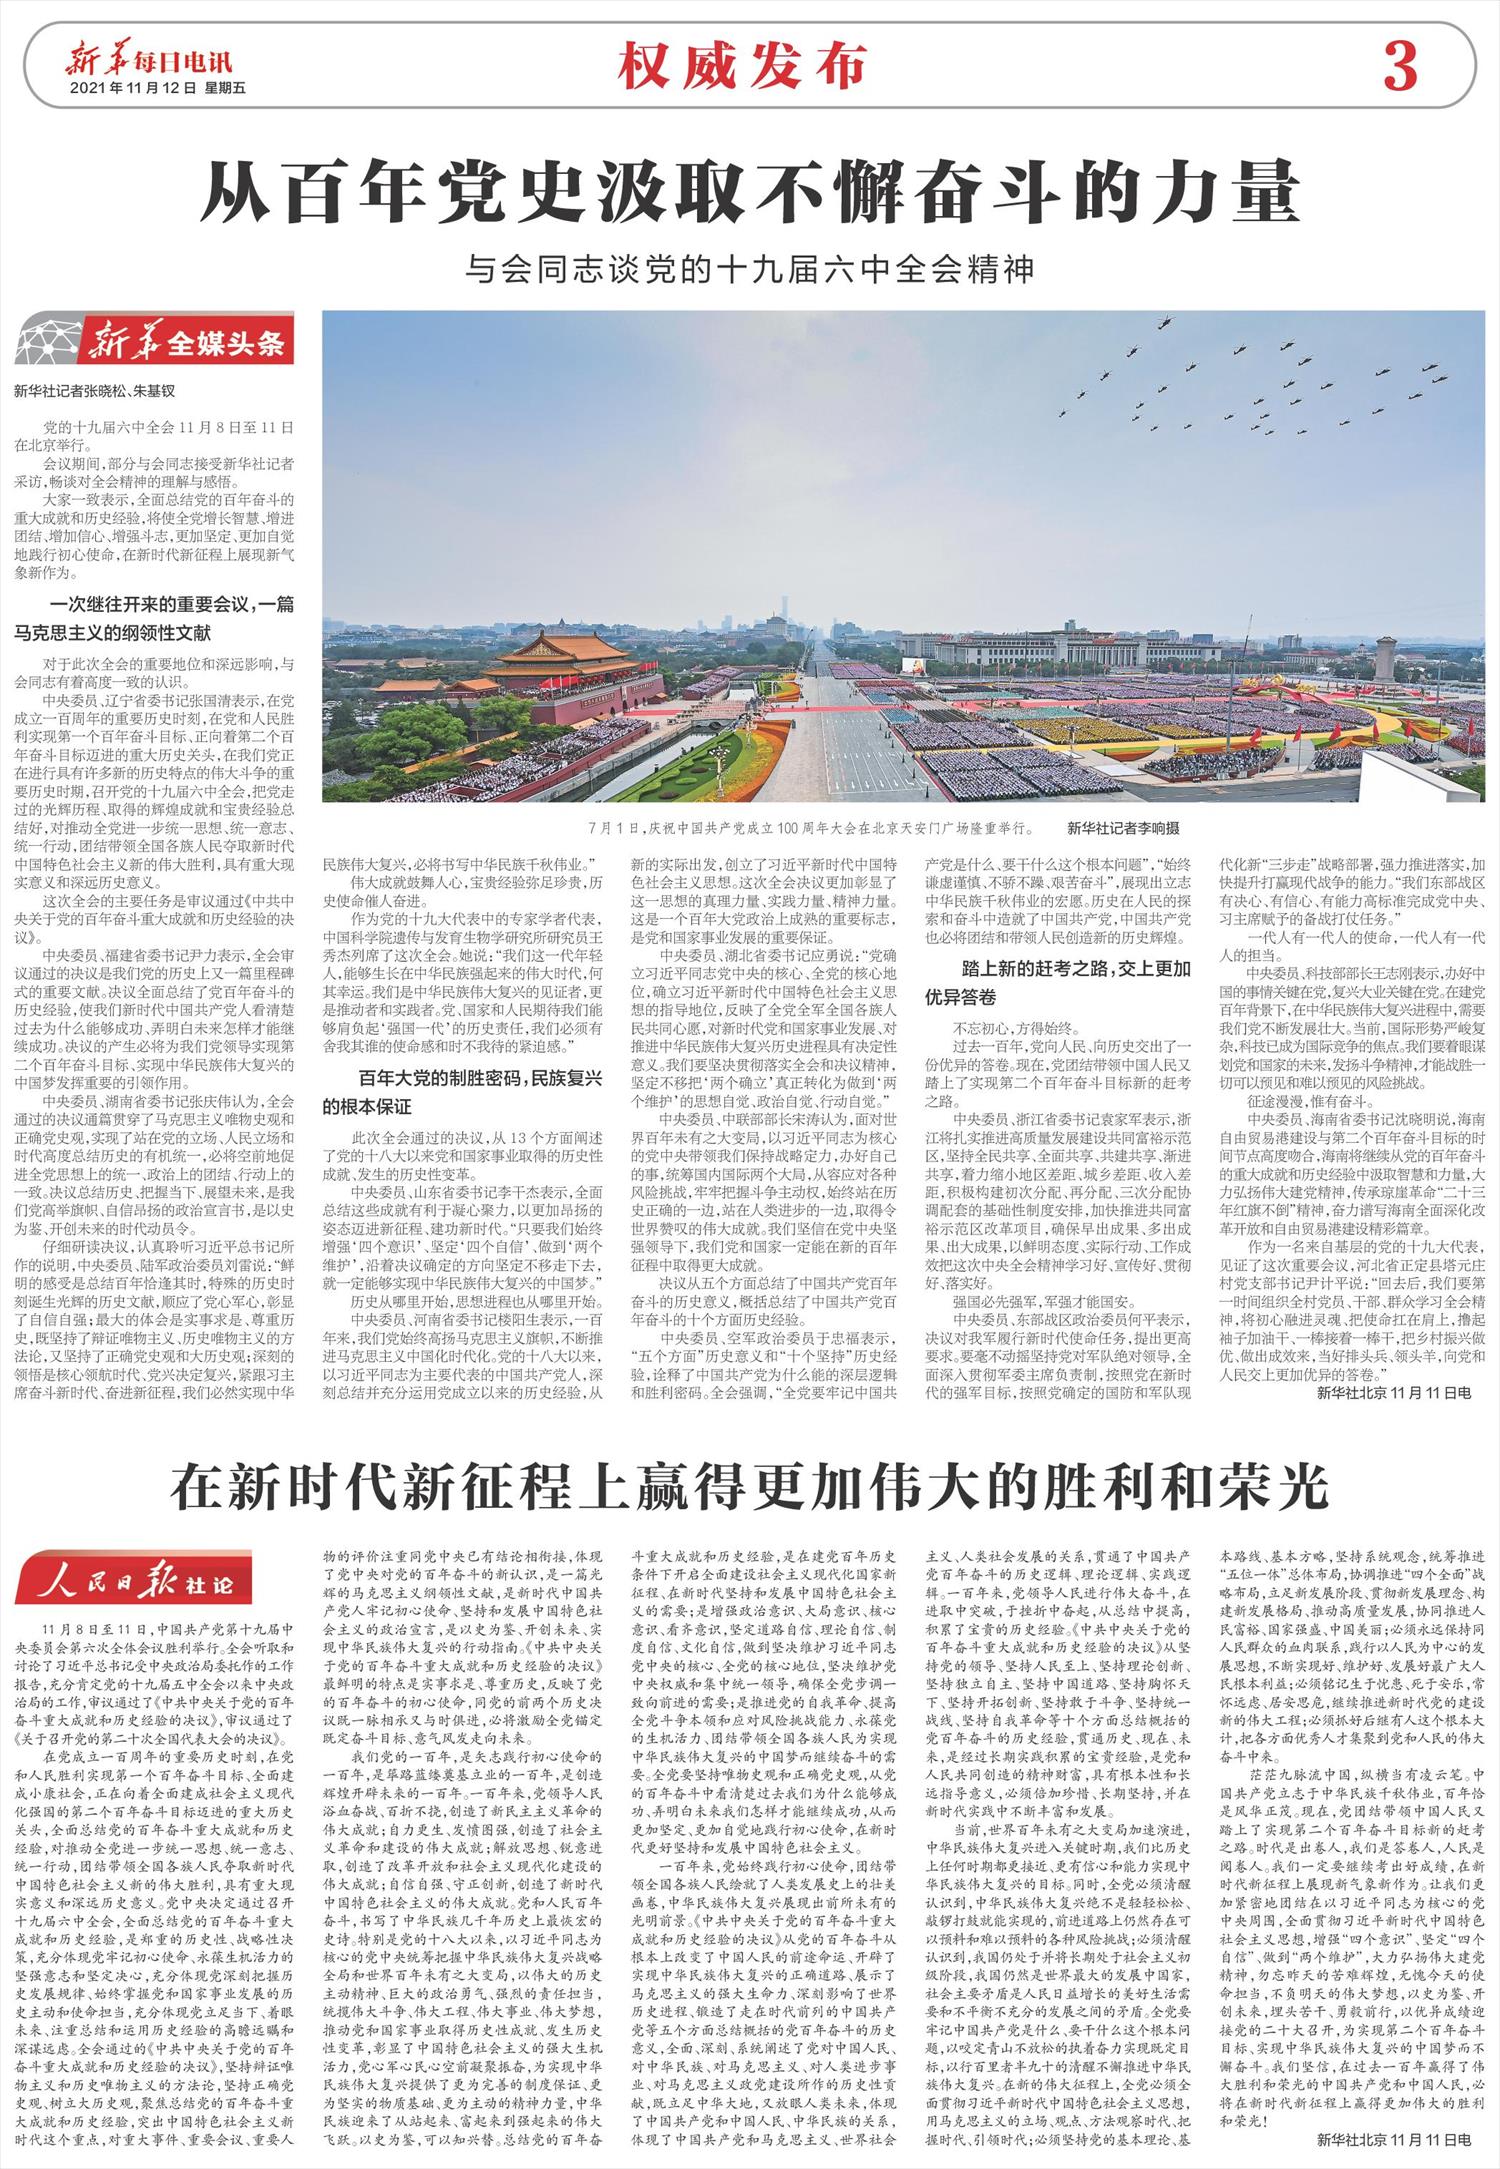 新华每日电讯-微报纸-2021年11月12日